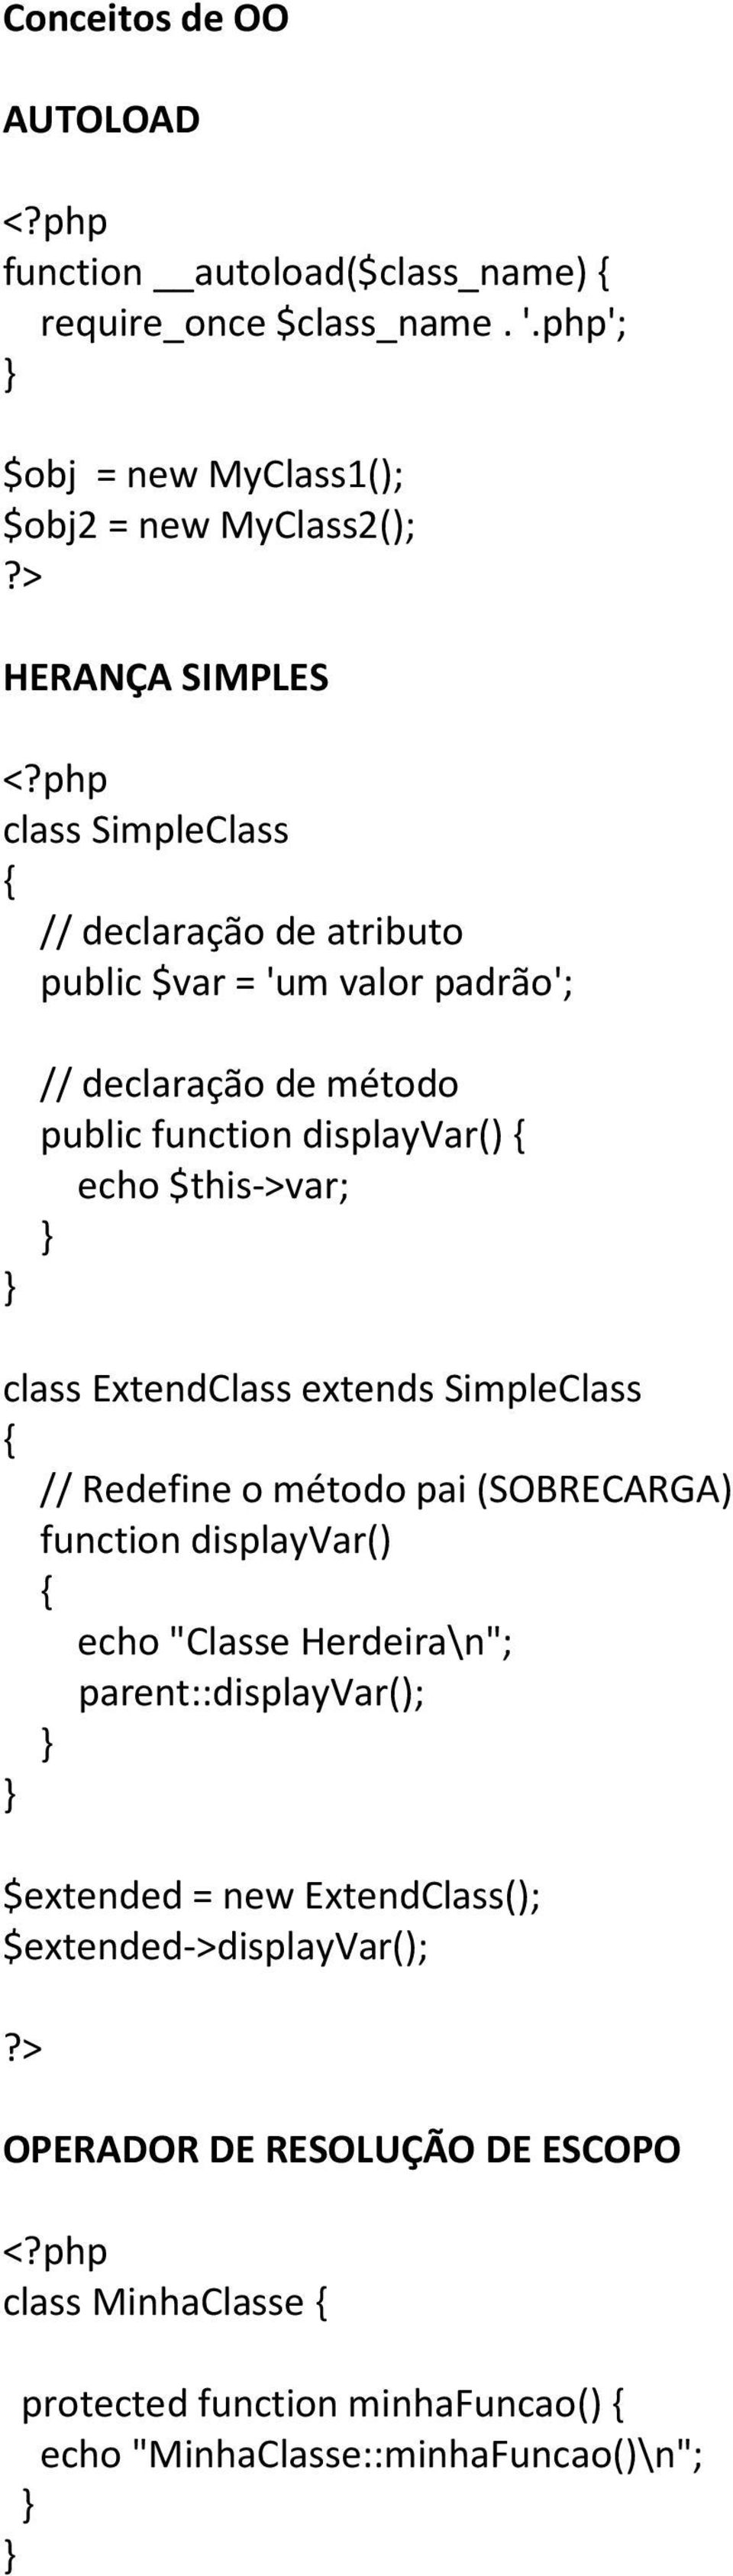 declaração de método public function displayvar() echo $this->var; class ExtendClass extends SimpleClass // Redefine o método pai (SOBRECARGA) function